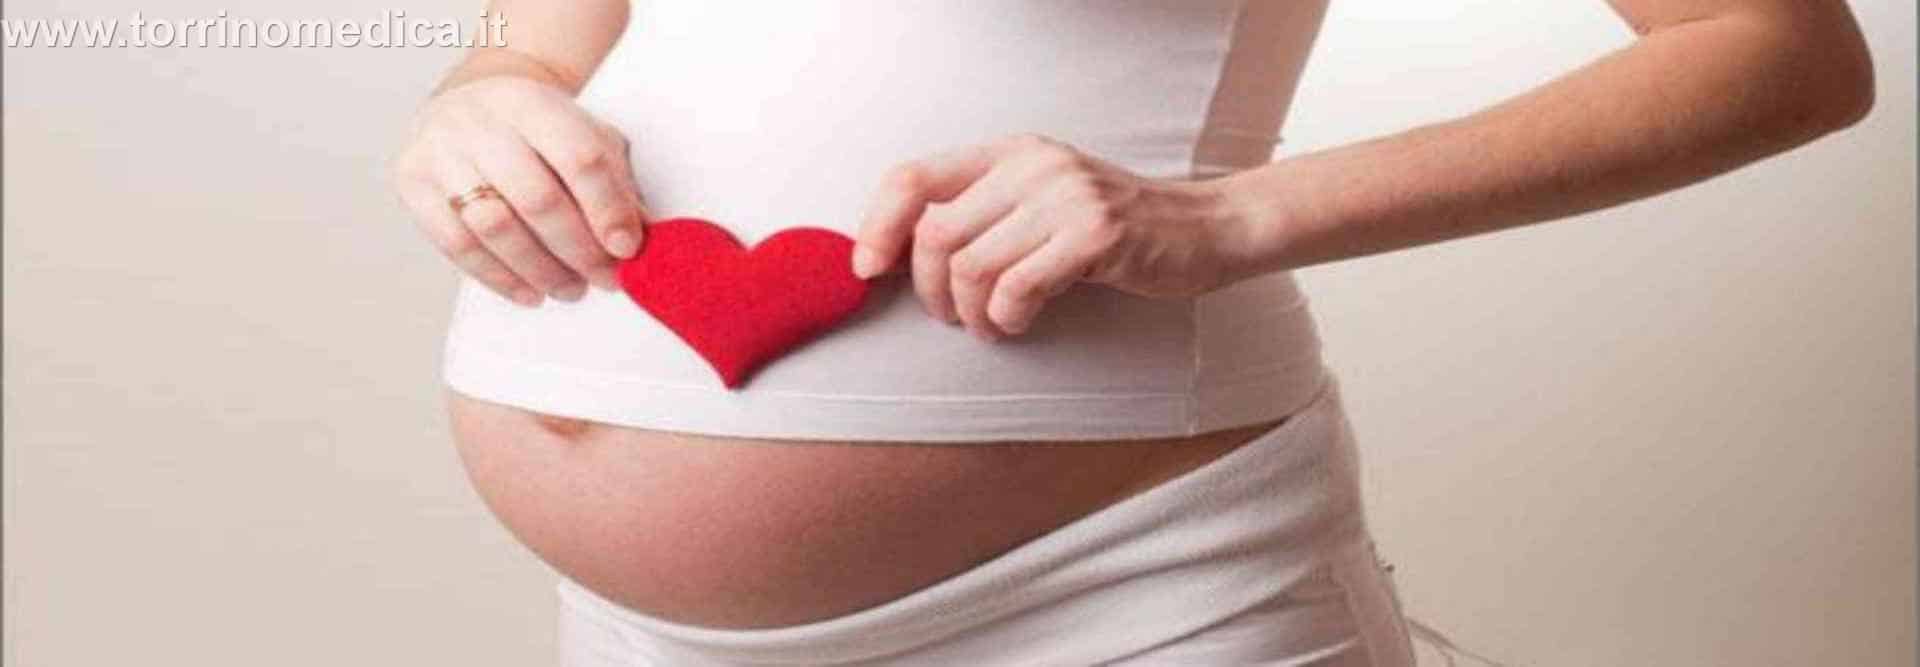 Dove fa male inizio gravidanza?